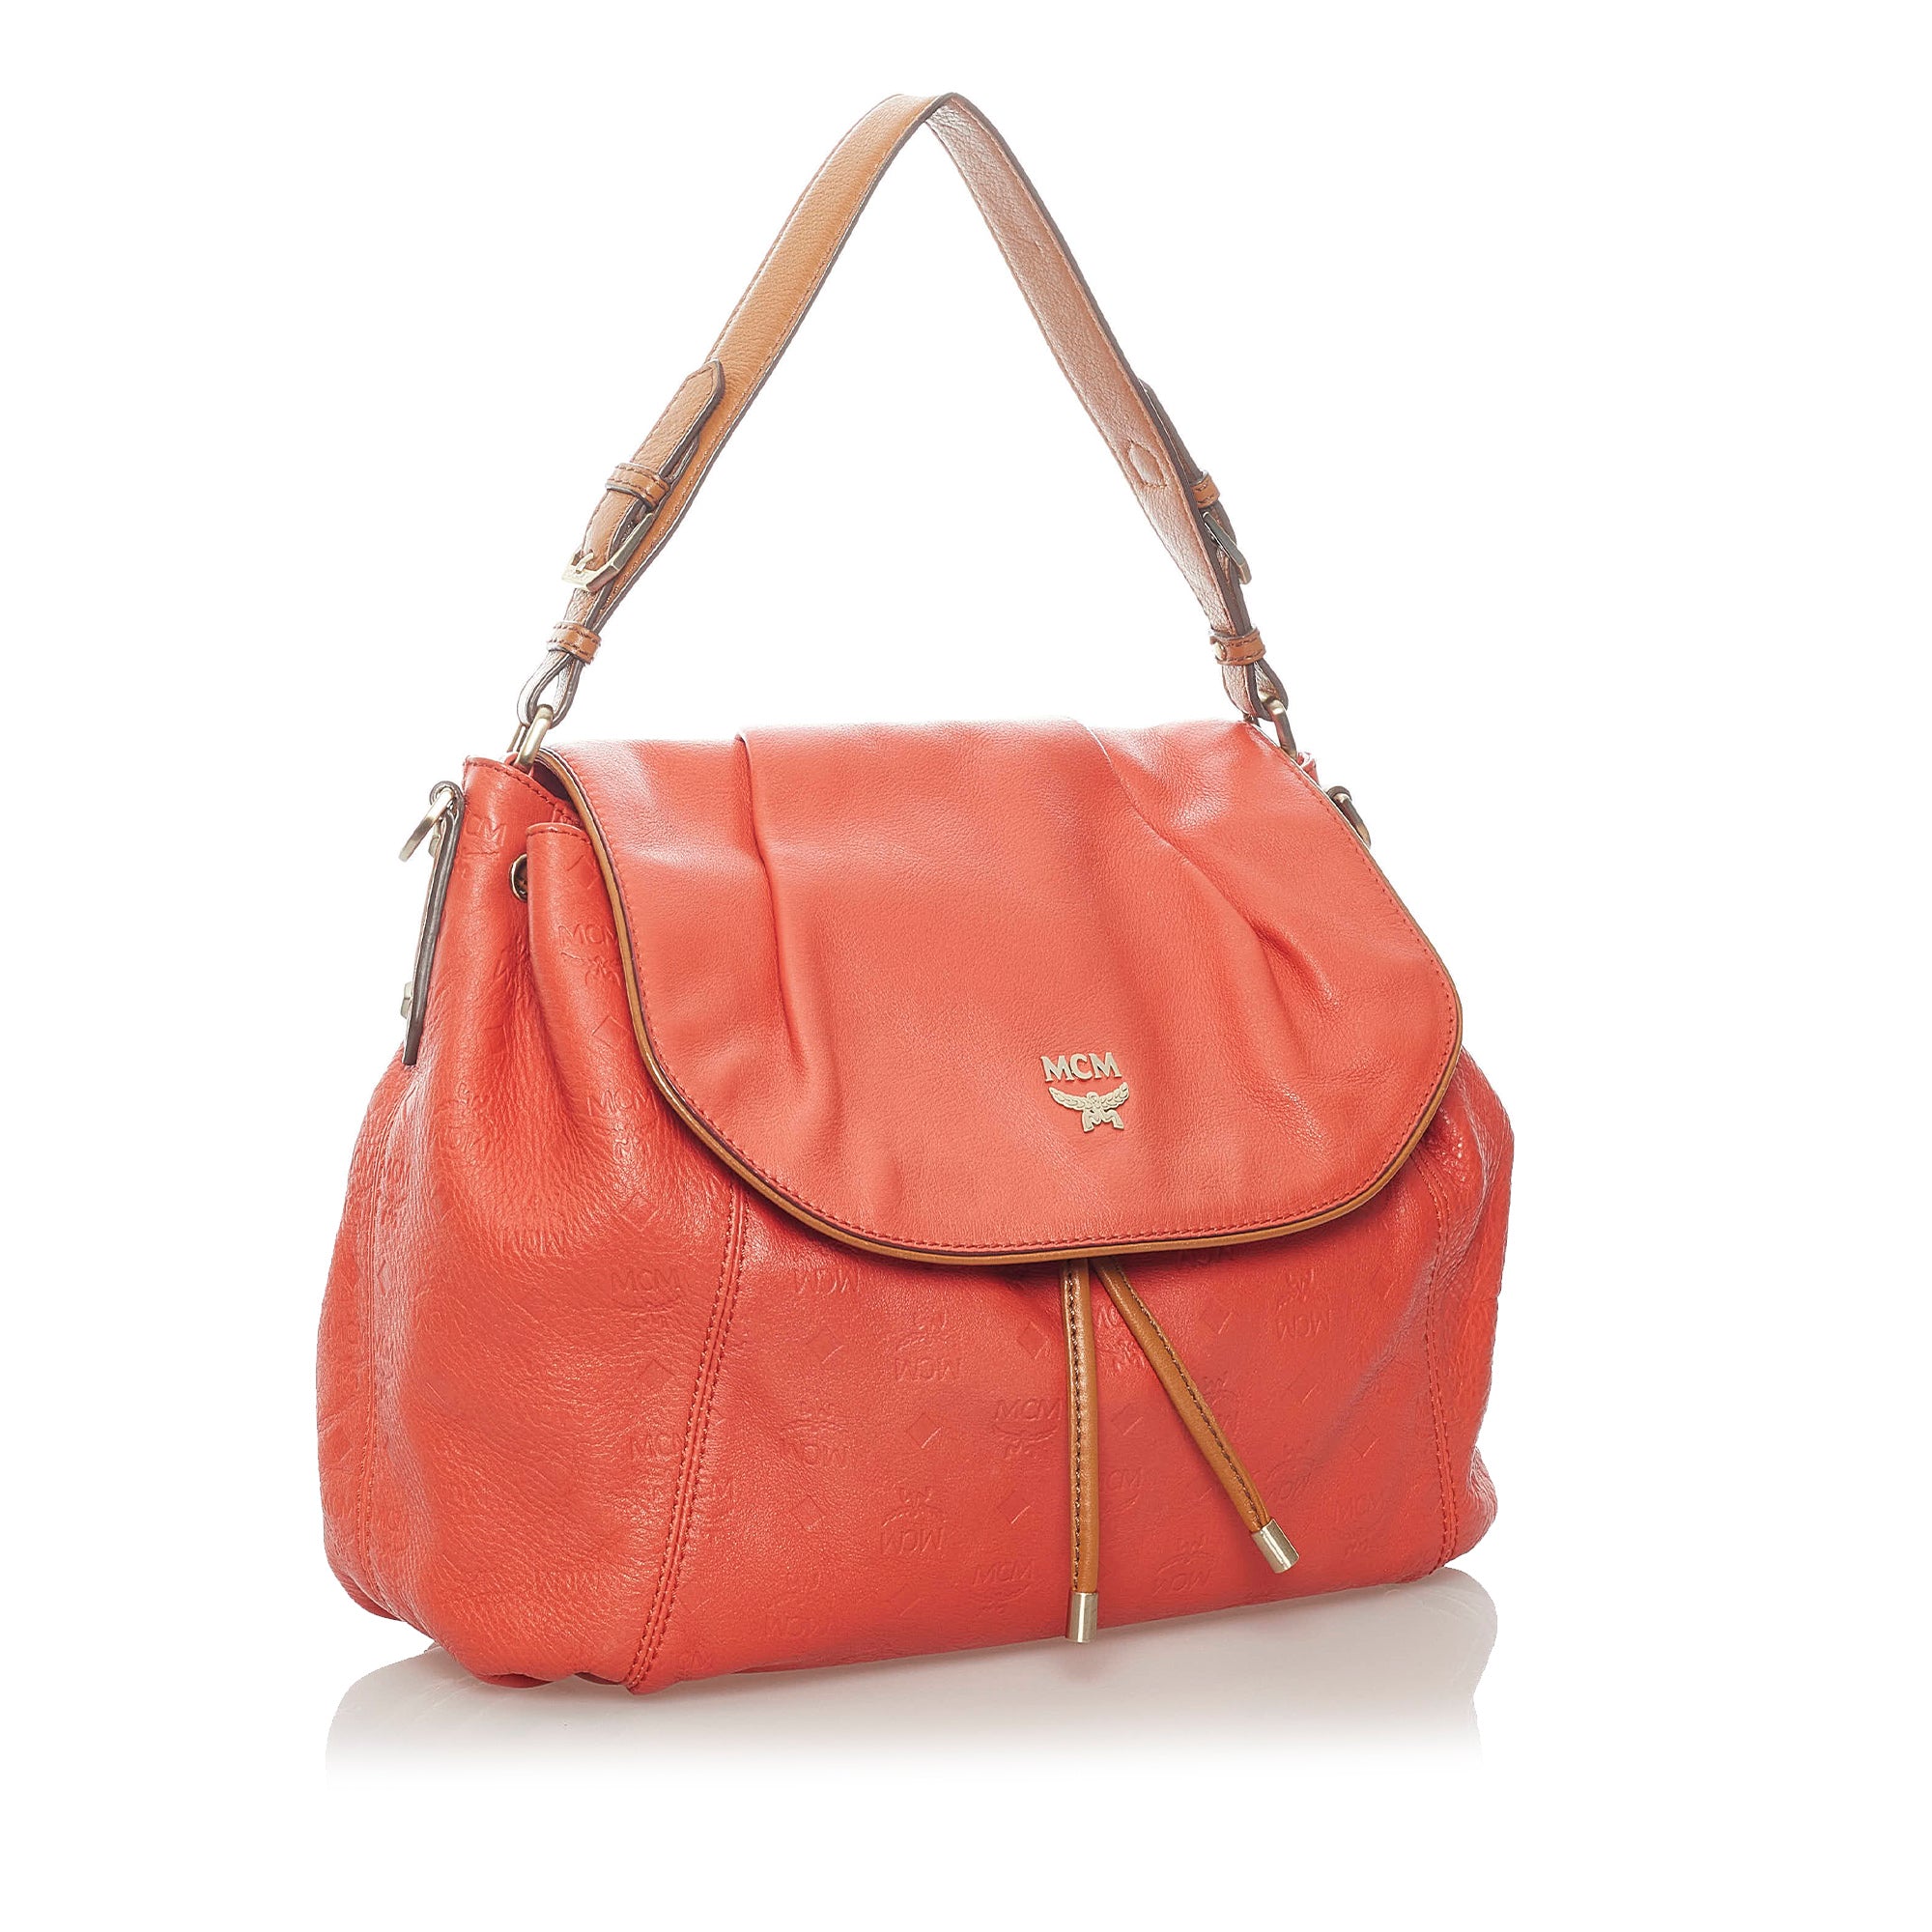 Orange MCM Leather Satchel Bag - Designer Revival